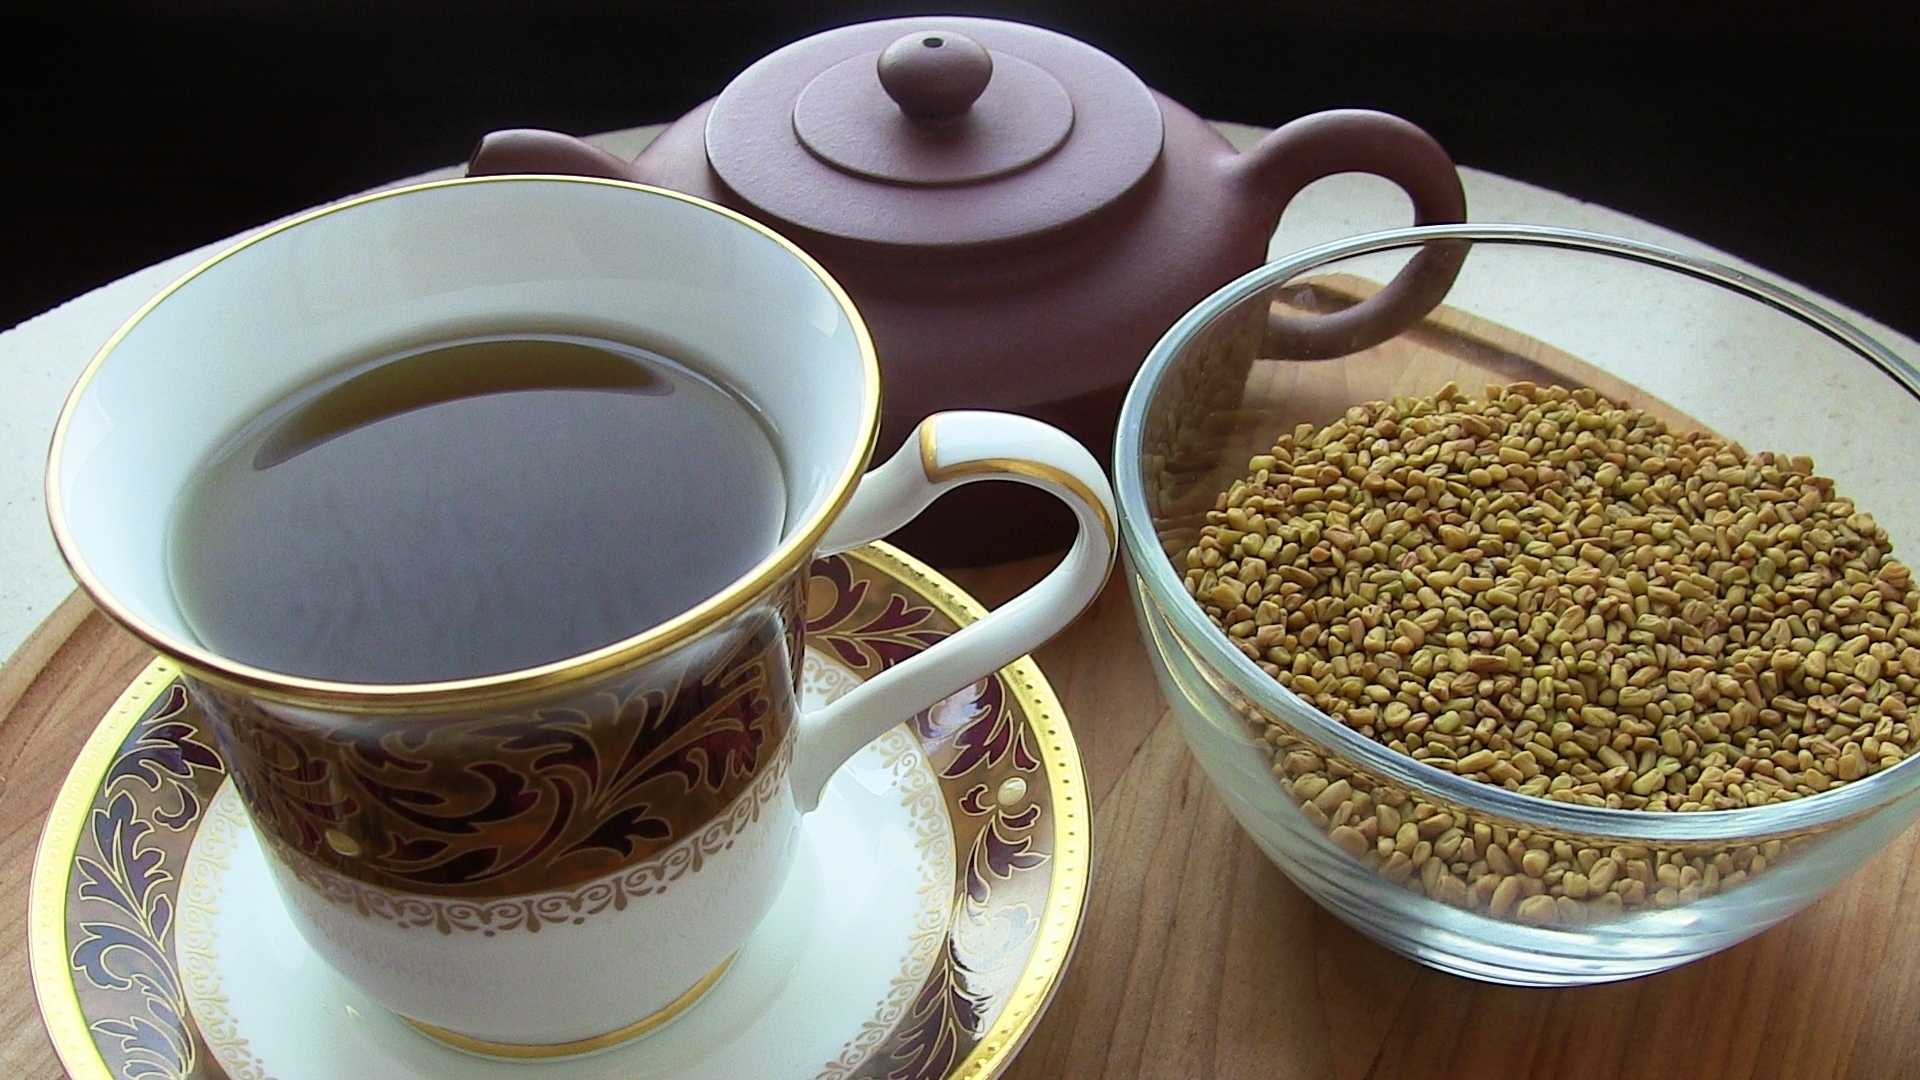 Желтый чай из египта. уникальная шамбала или обыкновенный пажитник?